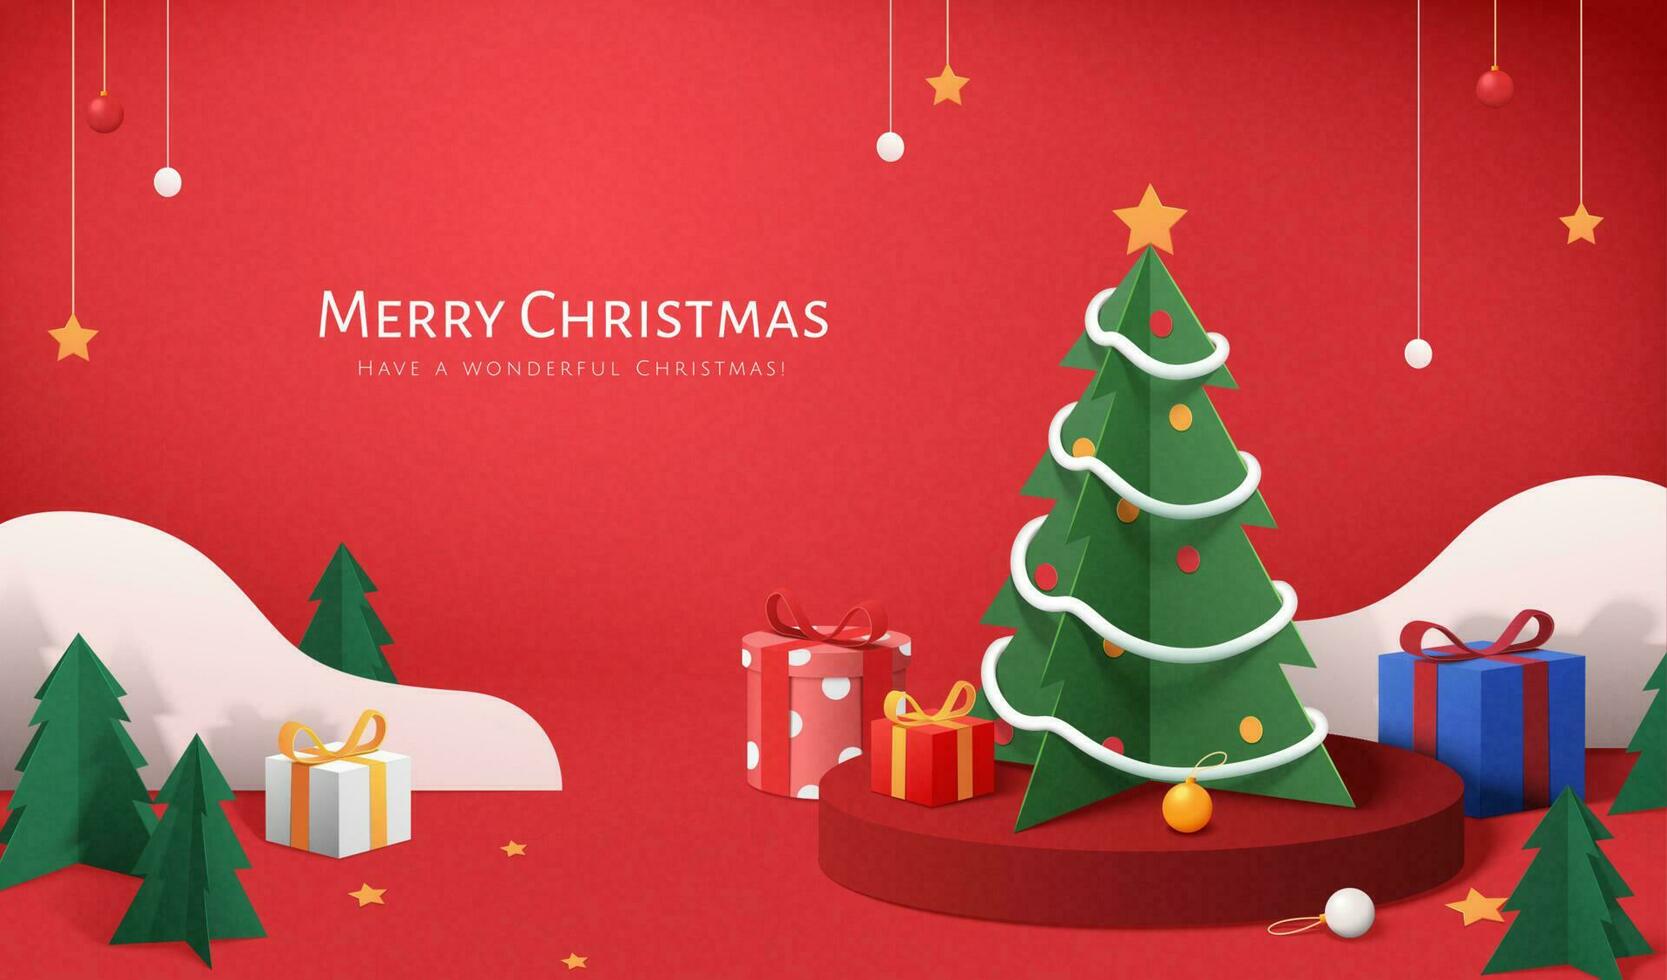 rot Weihnachten Banner im Papier Schnitt Stil. Illustration von Weihnachten Baum, Geschenke und klein Kiefer Bäume um runden Podium auf rot Hintergrund vektor